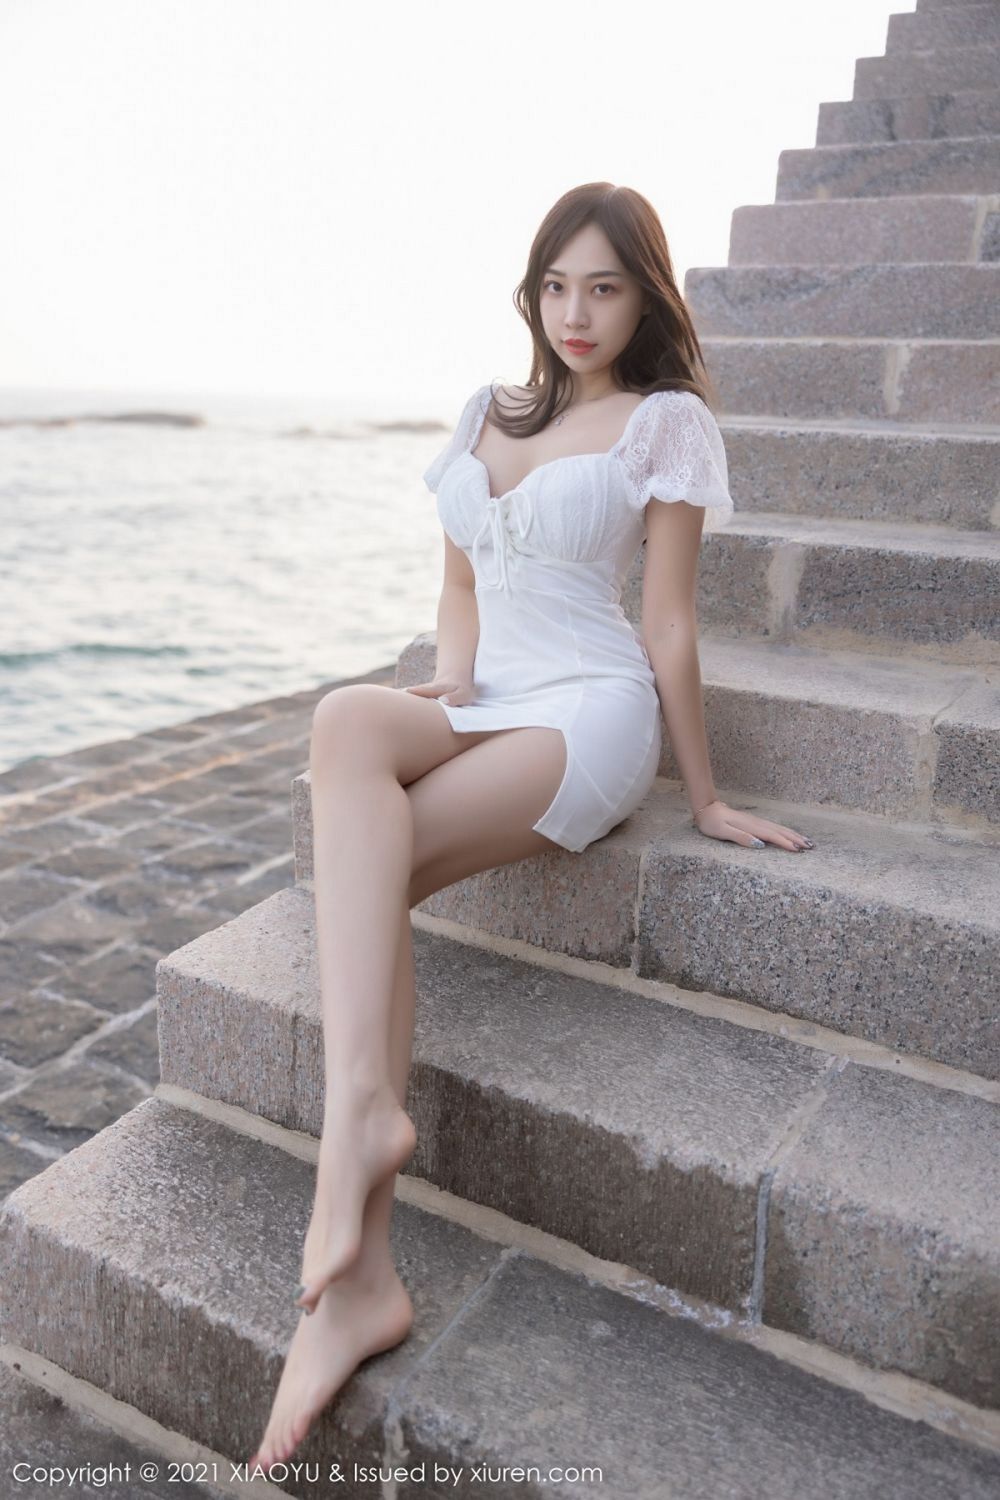 美女模特郑颖姗Bev白色裙子搭配白色丝袜青岛旅拍